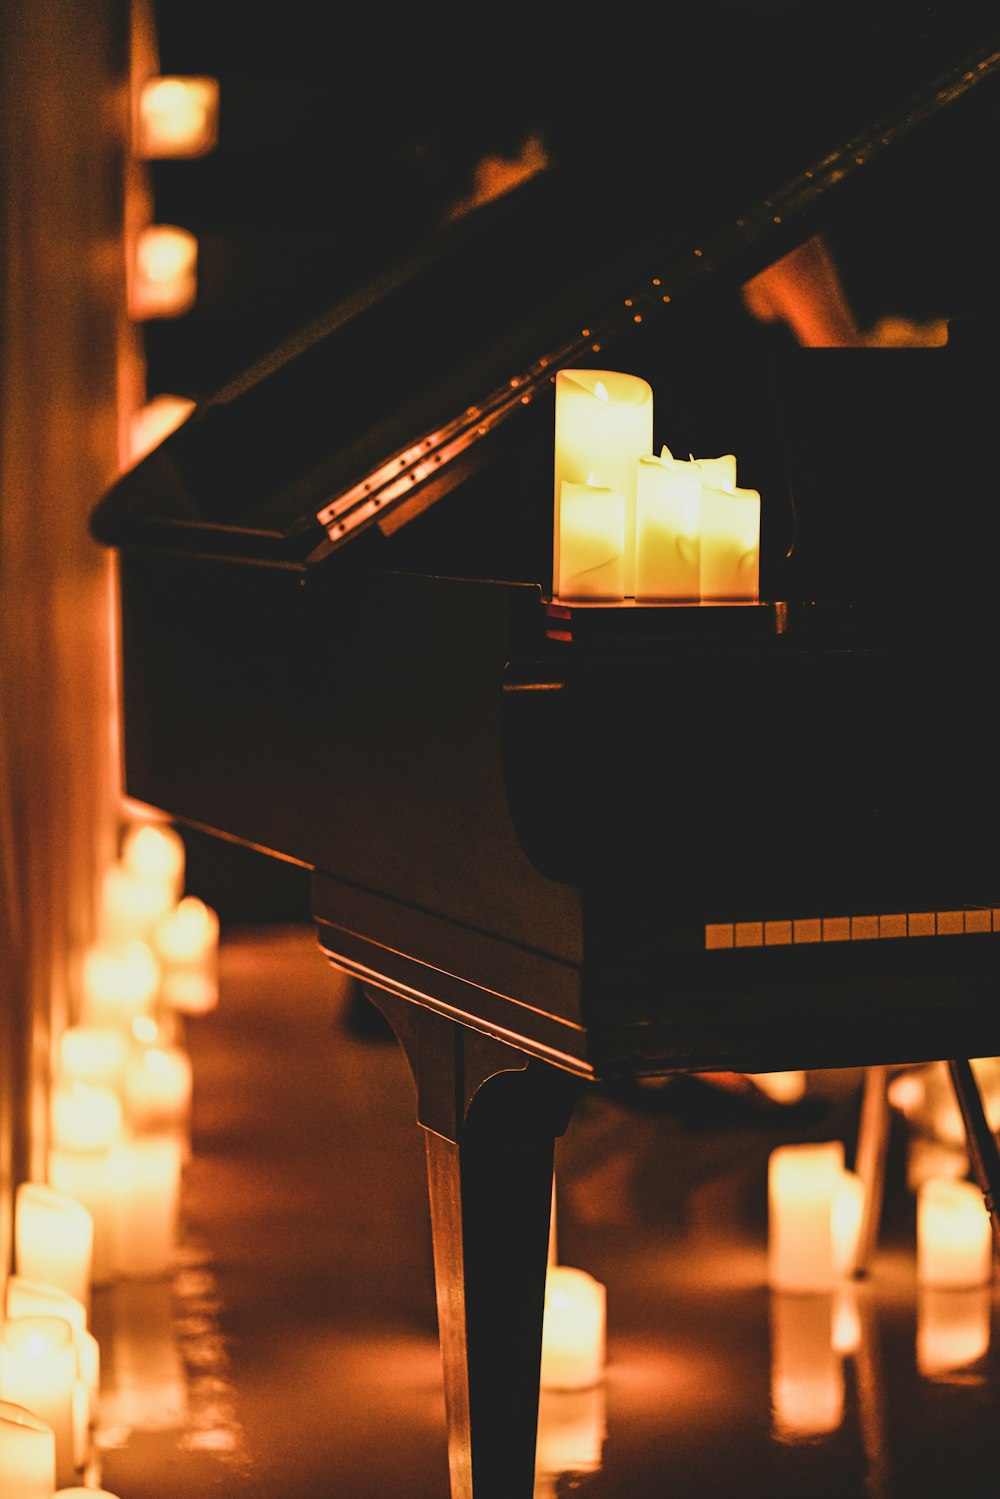 暗い部屋でピアノとろうそくが灯されている